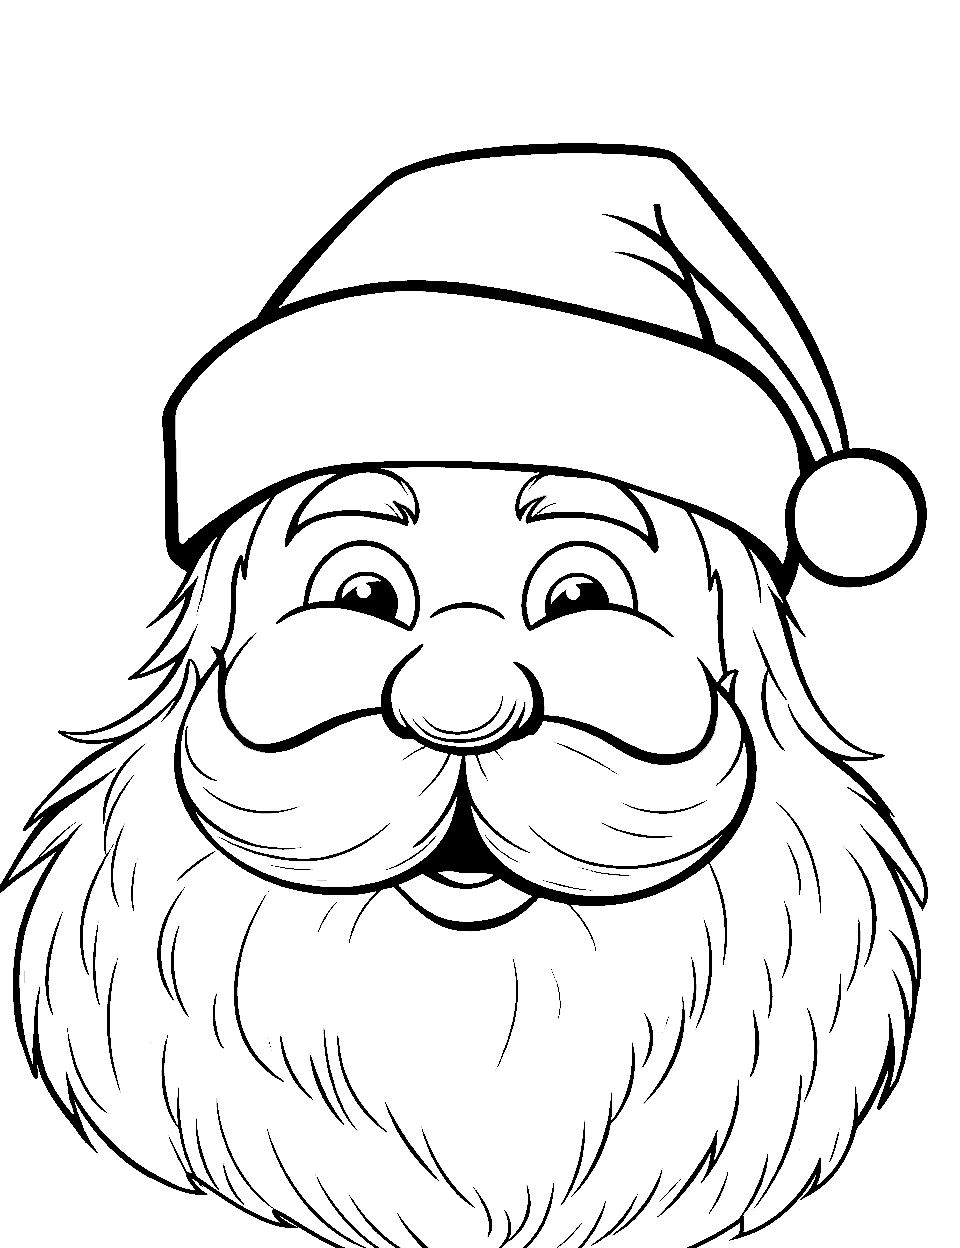 Santa's Face Close-Up Santa Coloring Page - A close-up of Santa’s face, highlighting his jolly expression and twinkling eyes.